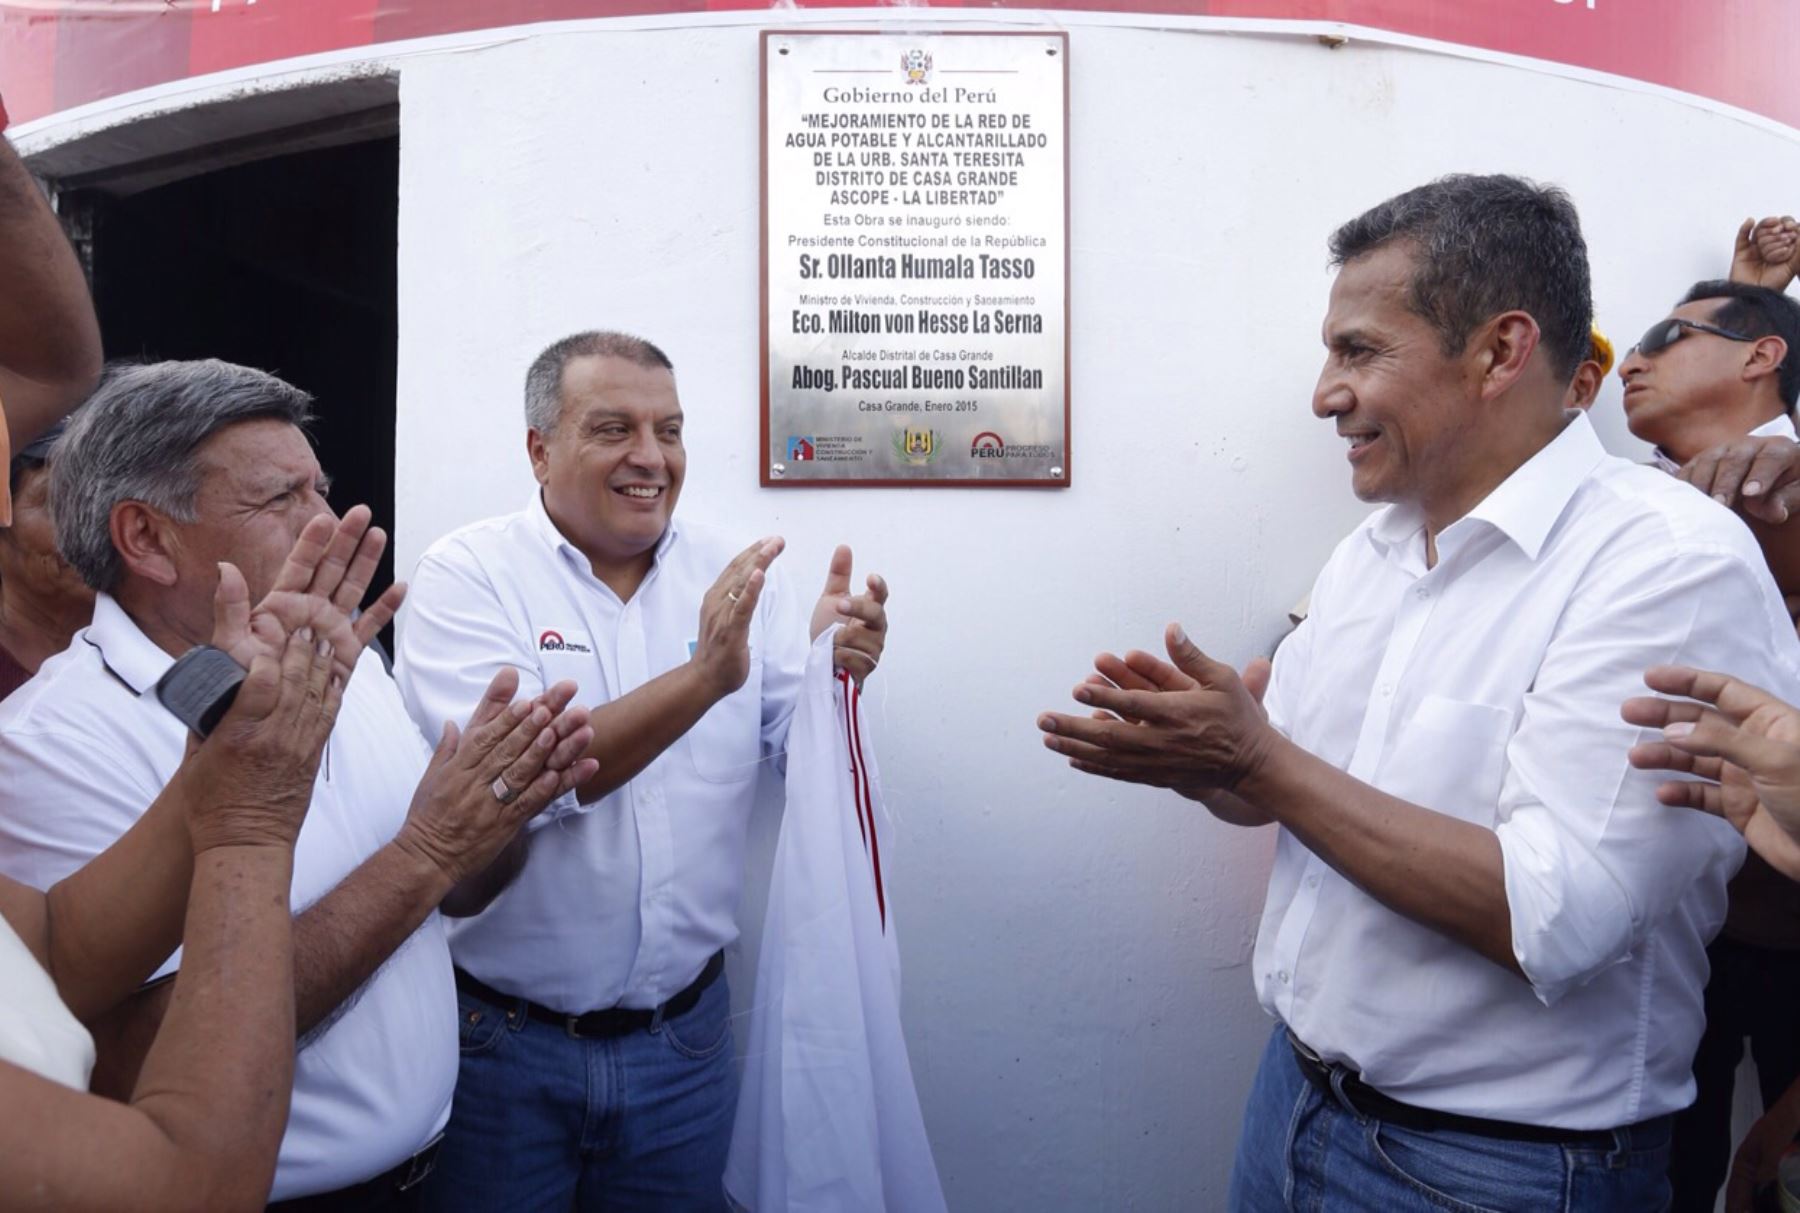 El Presidente Ollanta Humala,  inaugura obras de saneamiento e infraestructura en el distrito de Casa Grande, en la Libertad, que beneficiarán a unos 12,000 pobladores.Foto:ANDINA/MVCS‬/Karel navarro